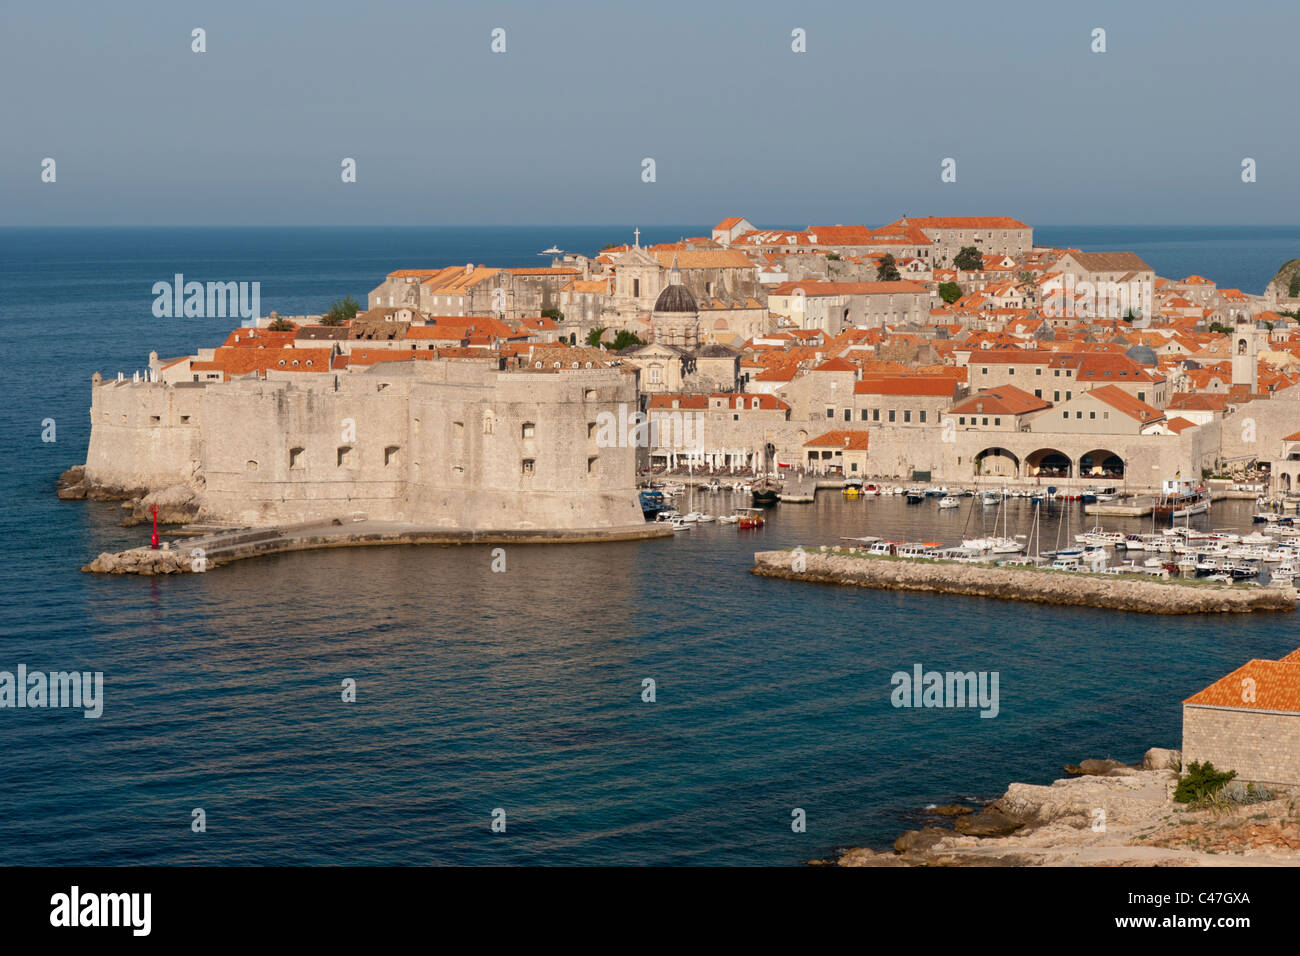 La ville de Dubrovnik, sur la côte adriatique en Croatie est un site du patrimoine mondial de l'Unesco et destination touristique populaire. Banque D'Images